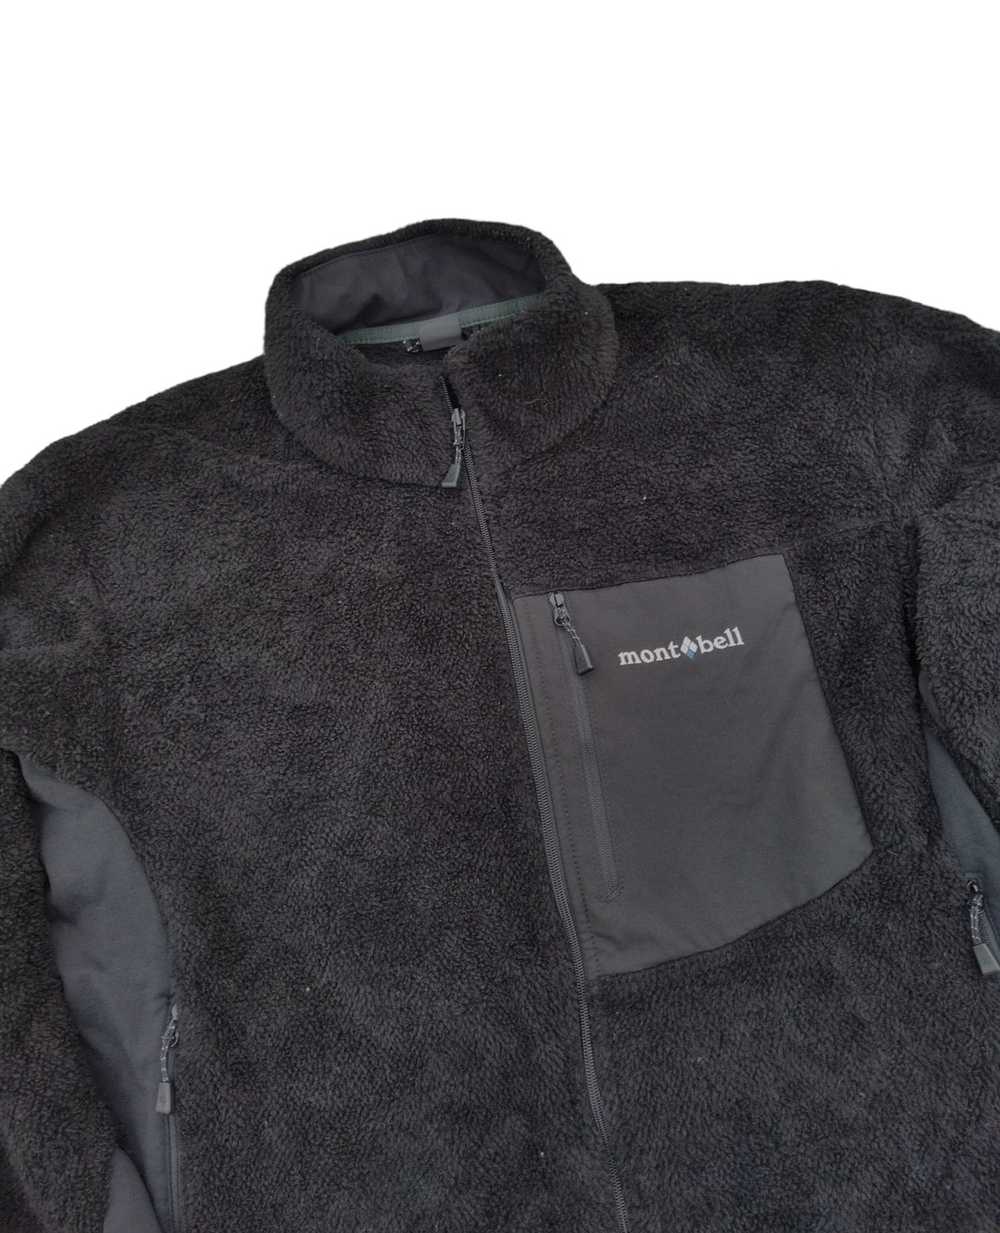 Montbell Montbell Light Zipper Fleece Jacket - image 2